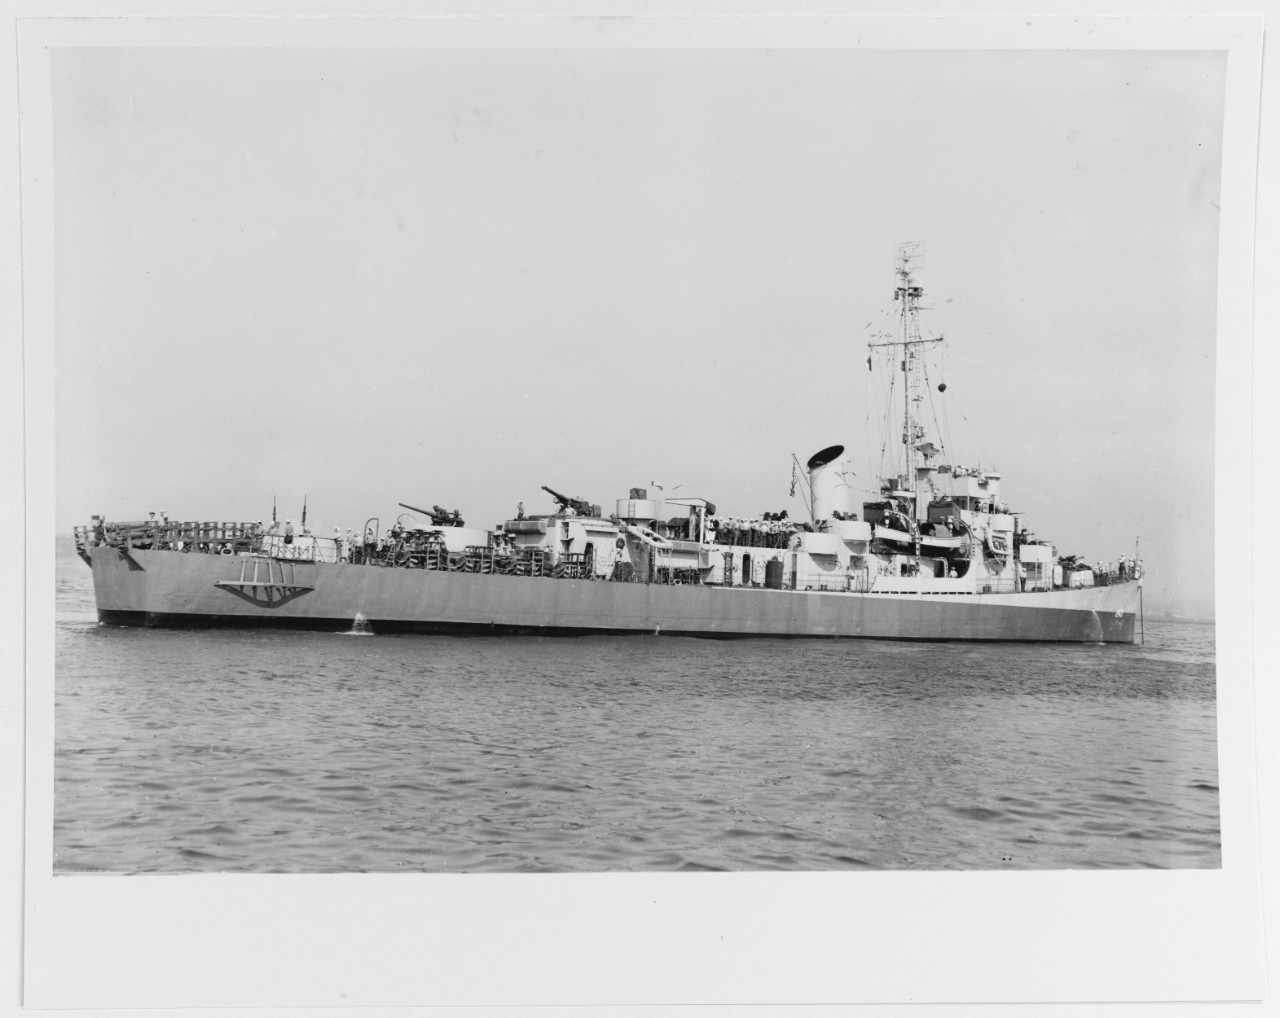 USS J. RICHARD WARD (DE-243)